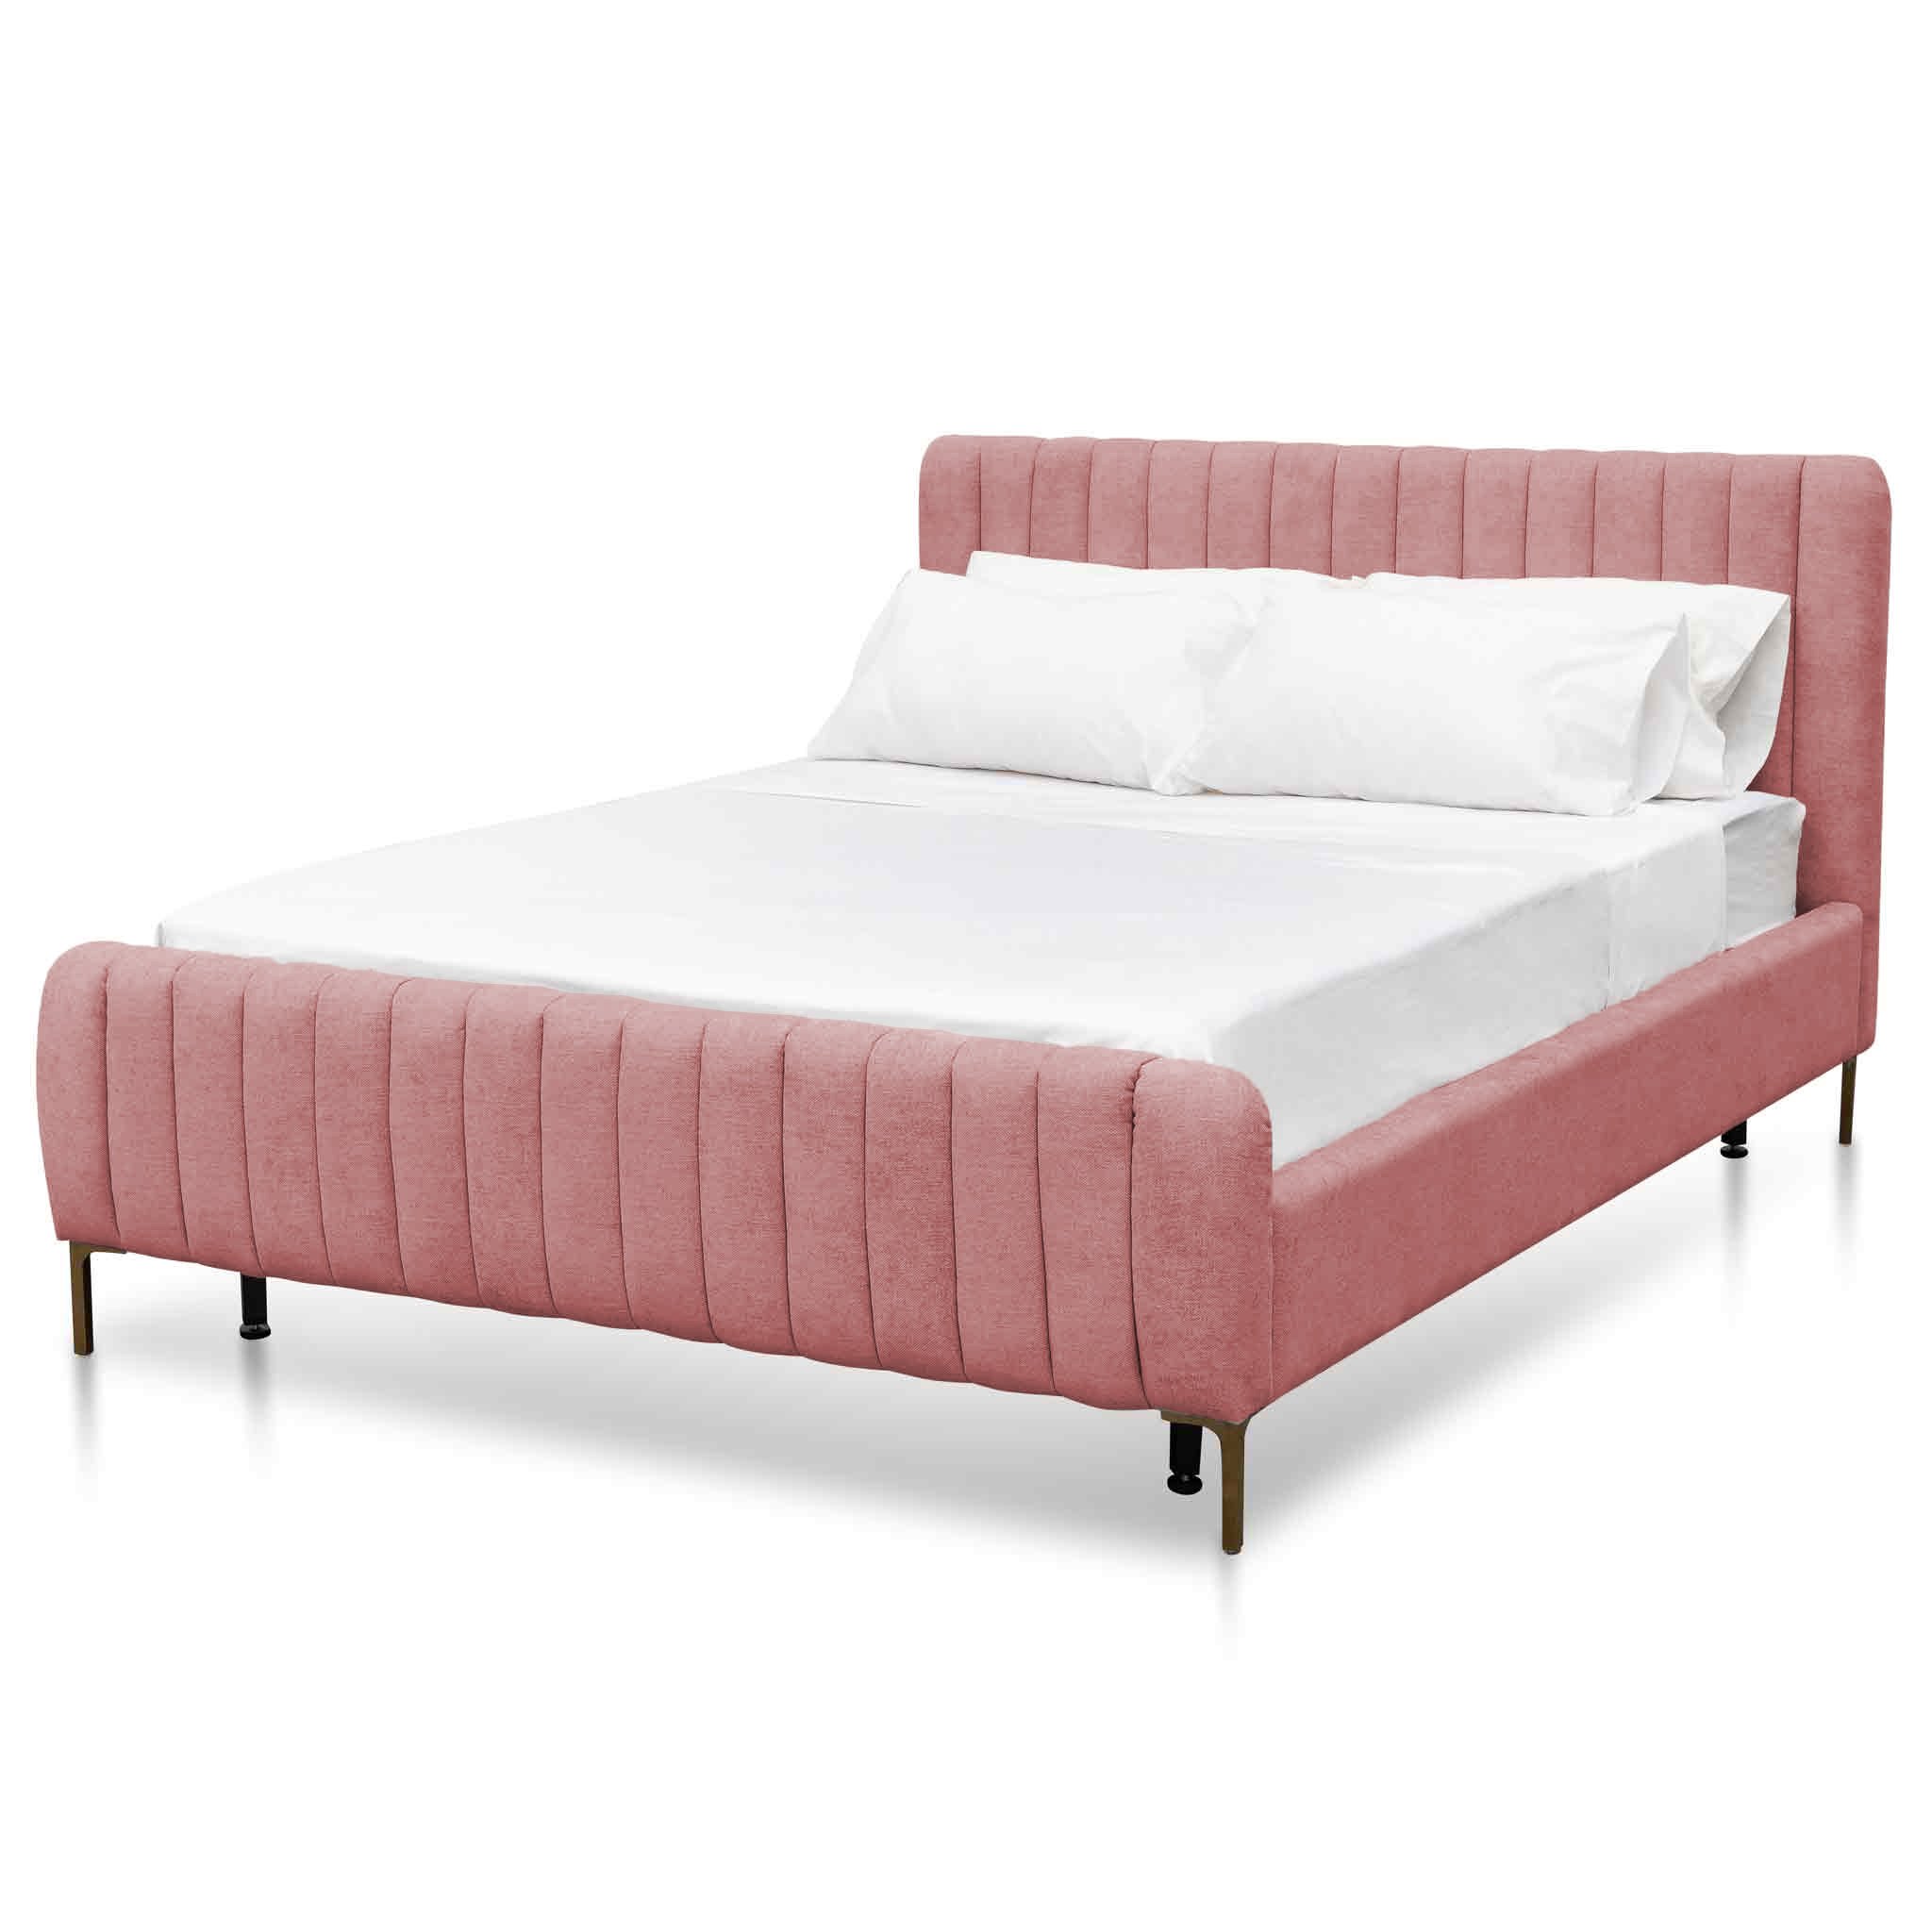 King Sized Bed Frame – Blush Peach Velvet